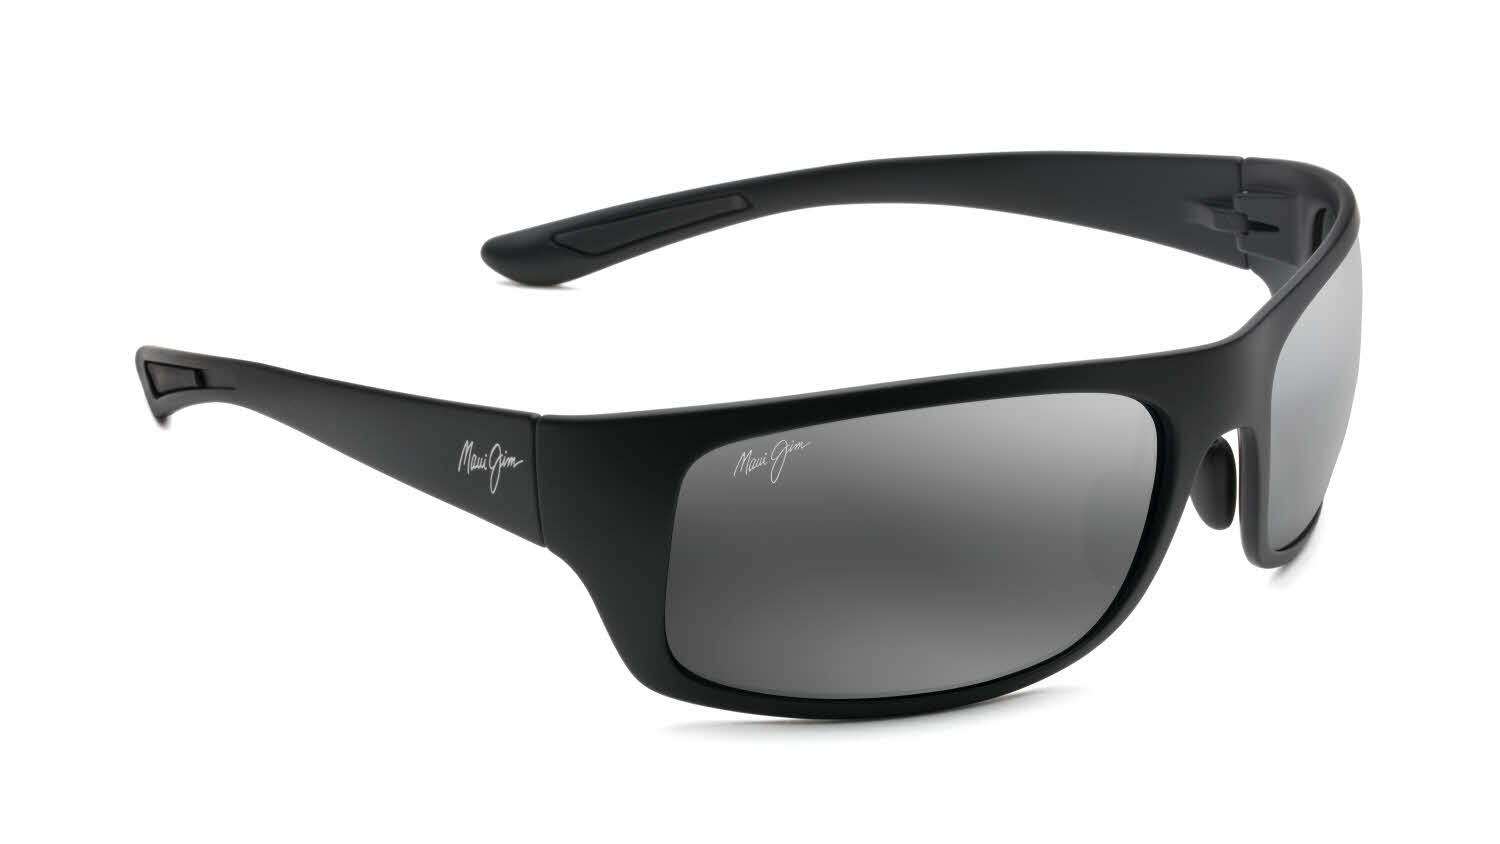 https://www.framesdirect.com/product_elarge_images/maui-jim-sunglasses-big-wave-440-2m-oq.jpg